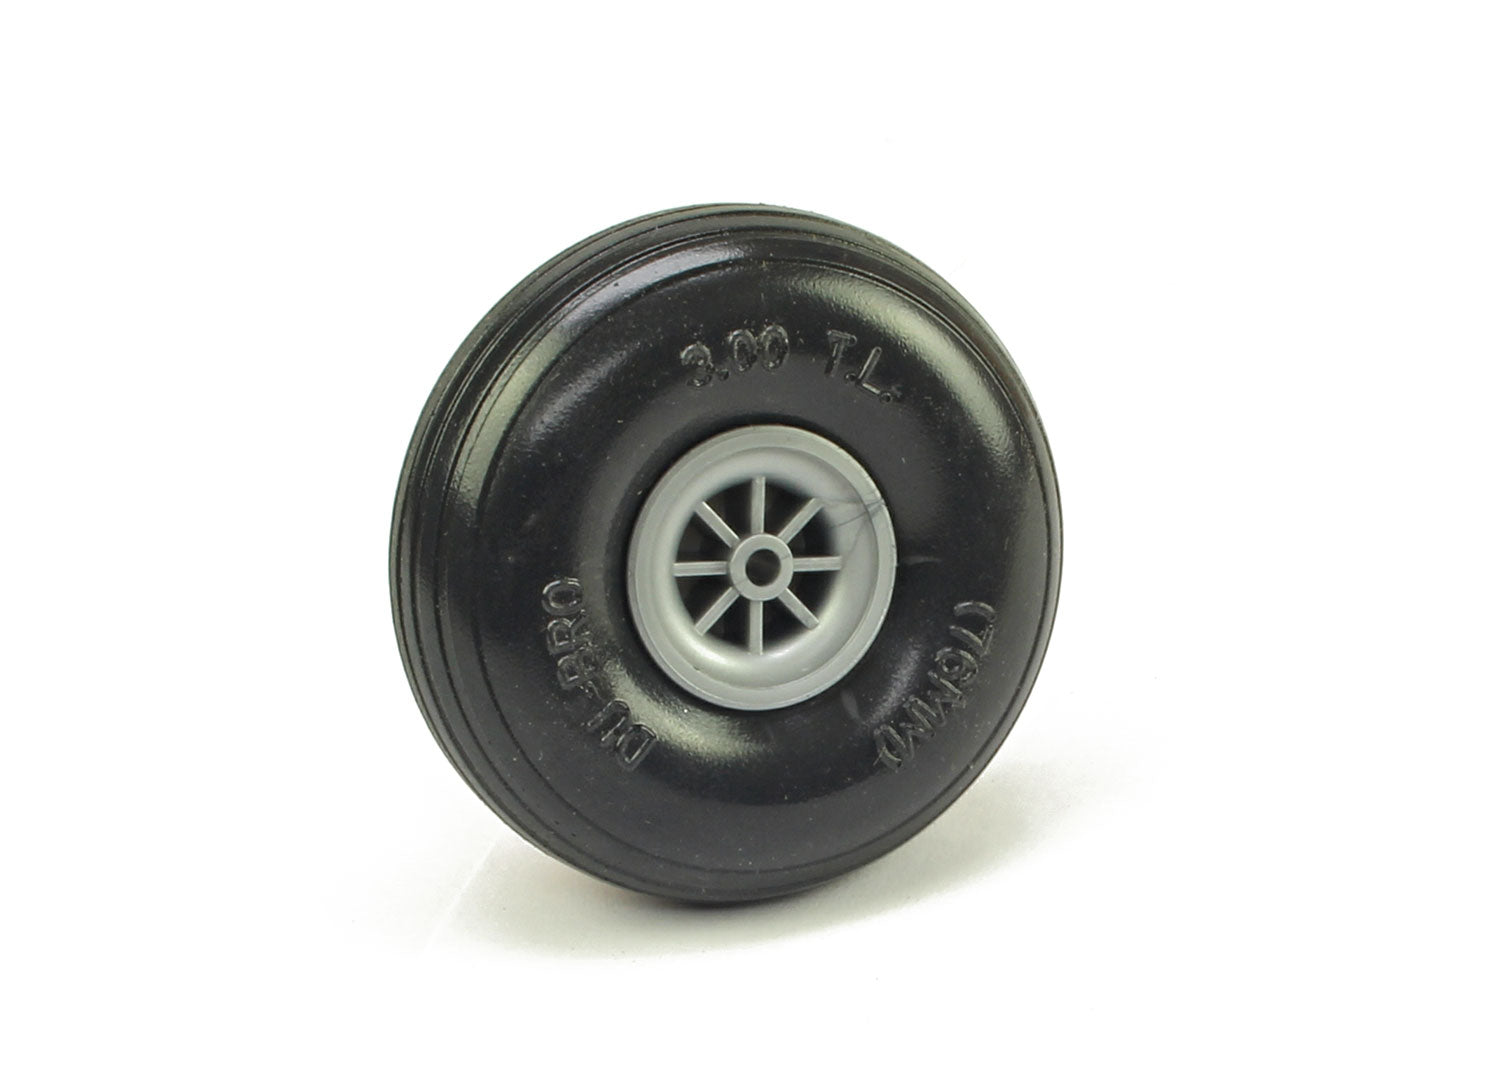 Du-Bro Low Bounce Threaded Wheels 3 1/2″ (89mm)